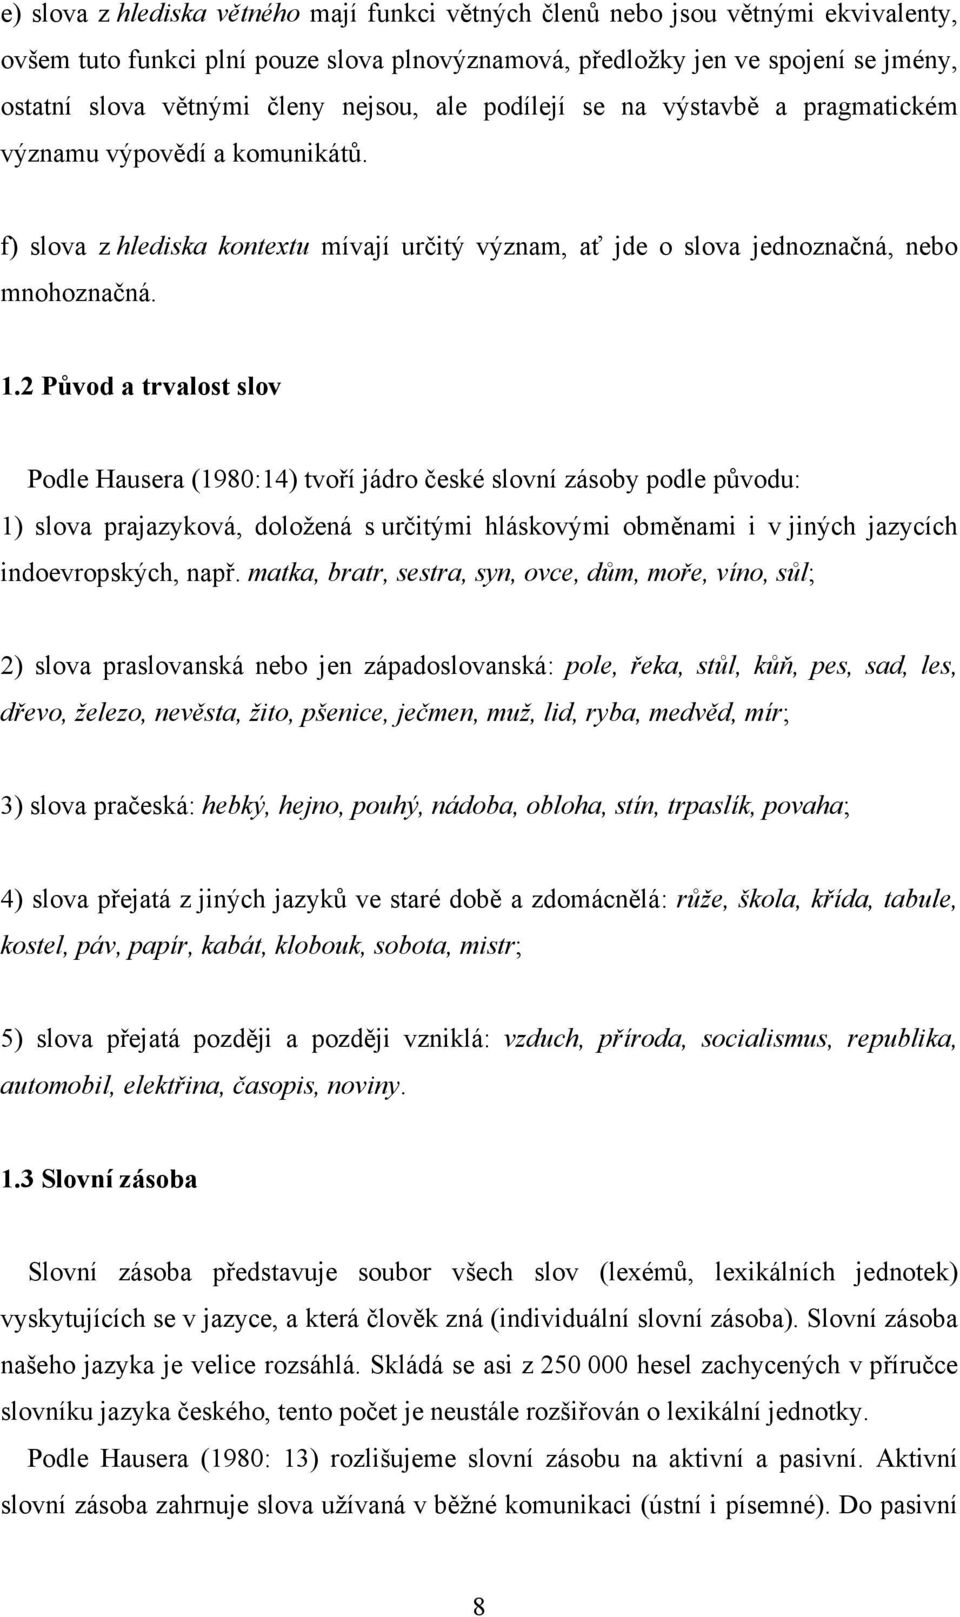 2 Původ a trvalost slov Podle Hausera (1980:14) tvoří jádro české slovní zásoby podle původu: 1) slova prajazyková, doložená s určitými hláskovými obměnami i v jiných jazycích indoevropských, např.